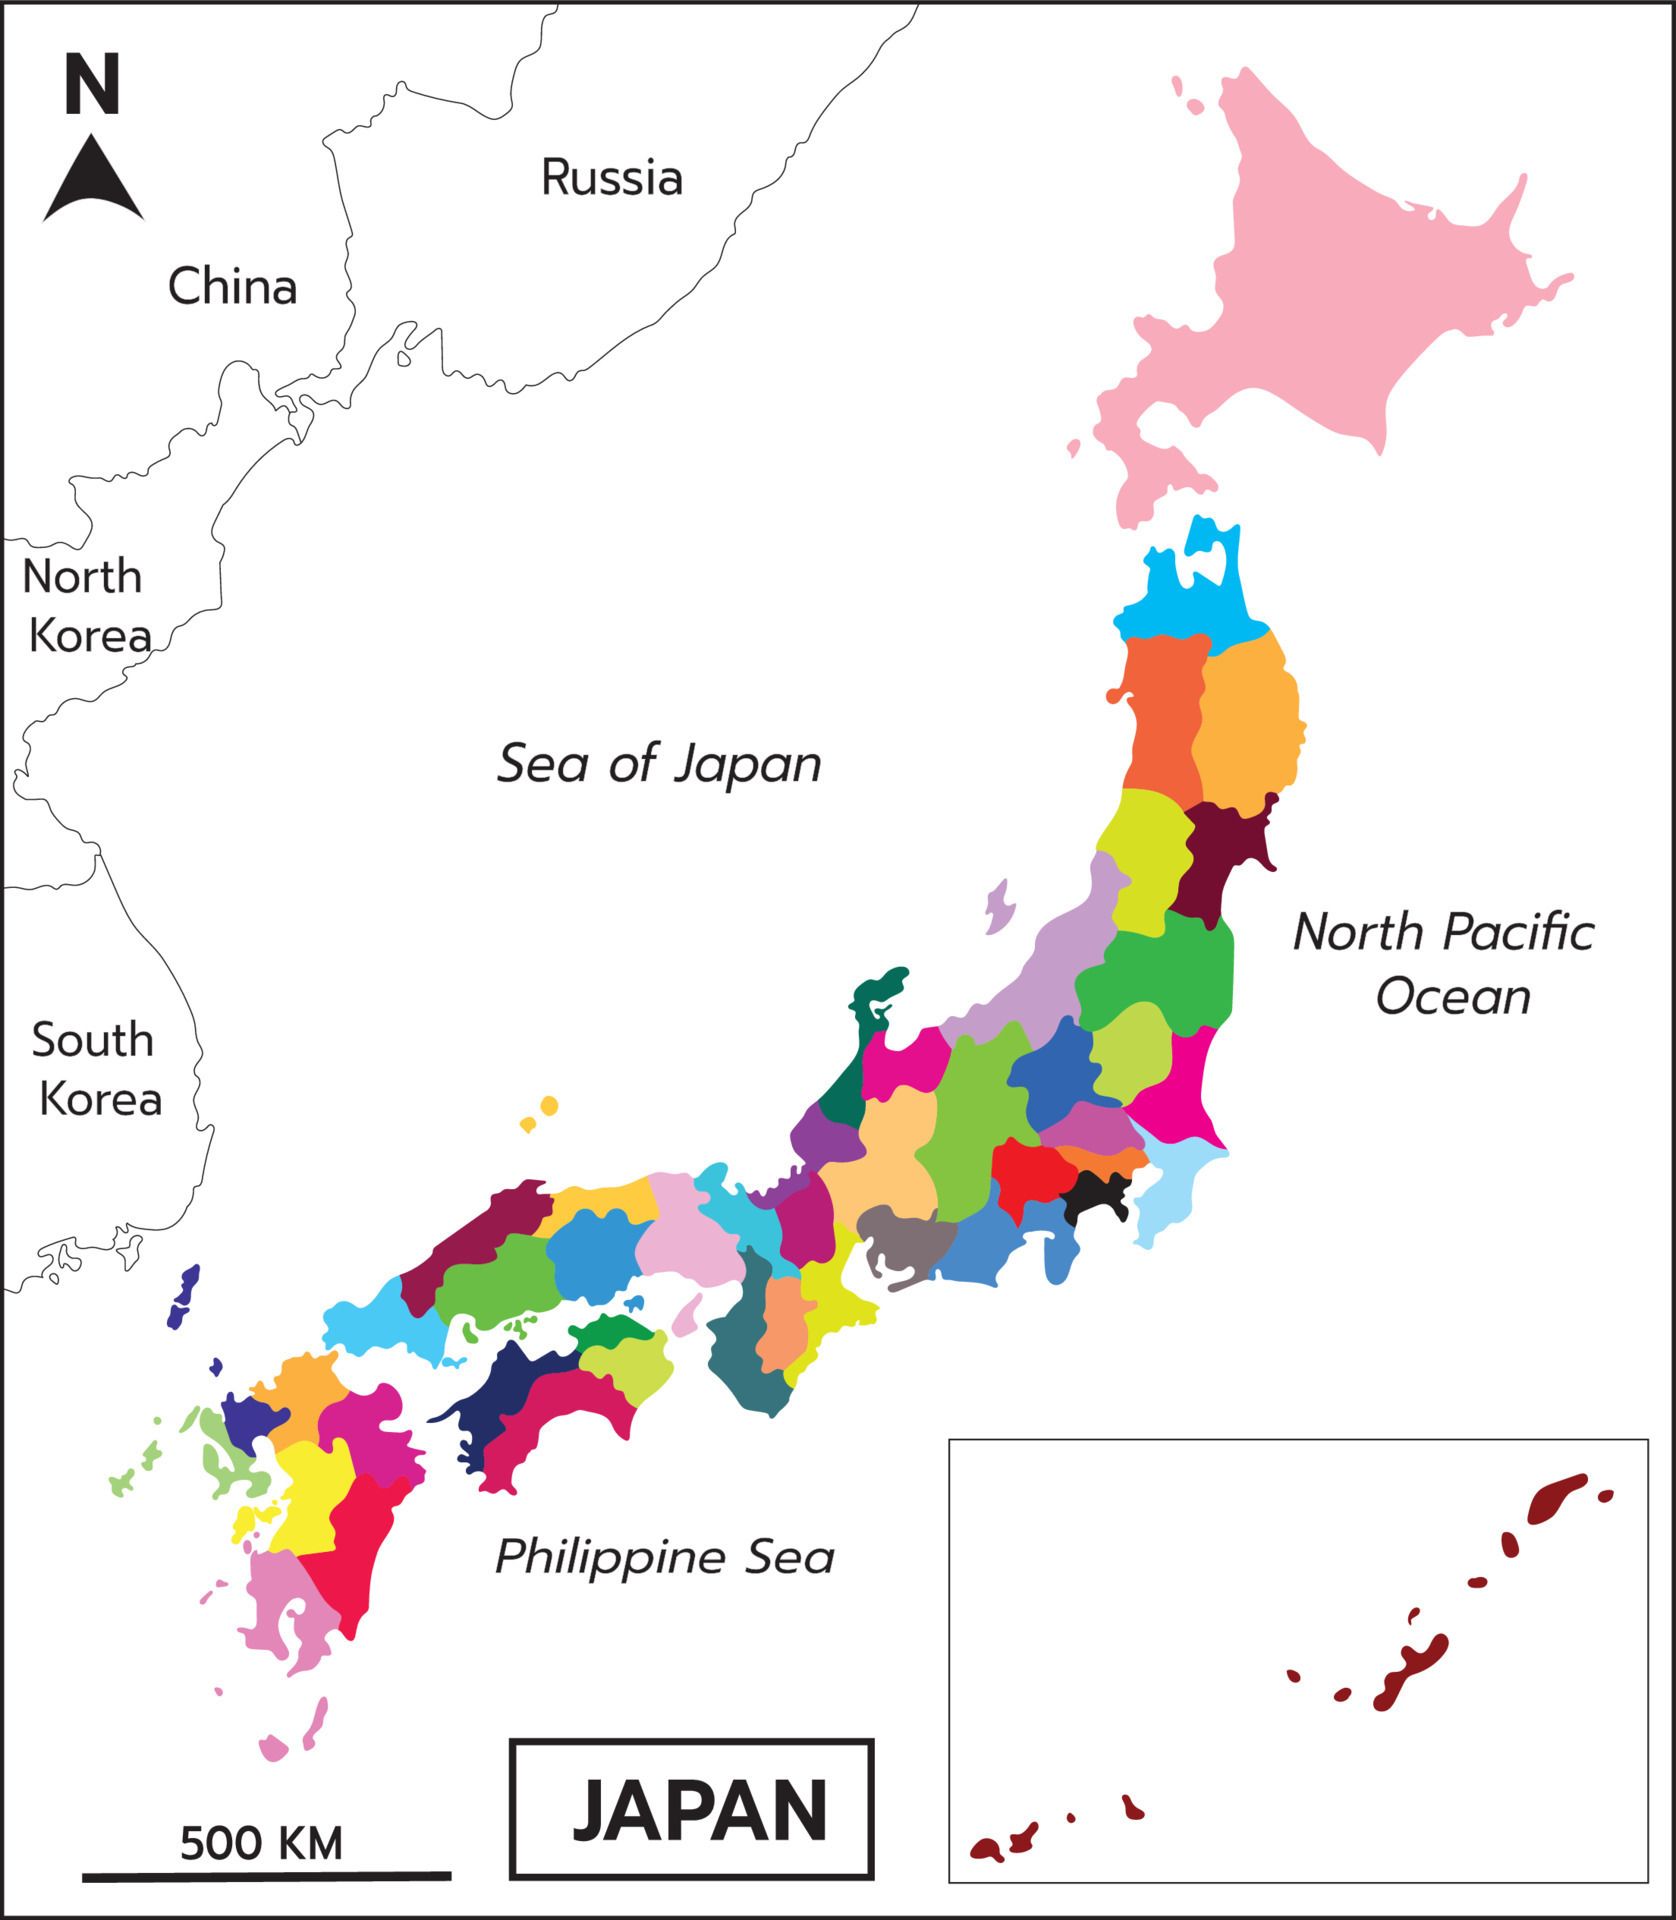 langue la plus parlée au monde - le japonais